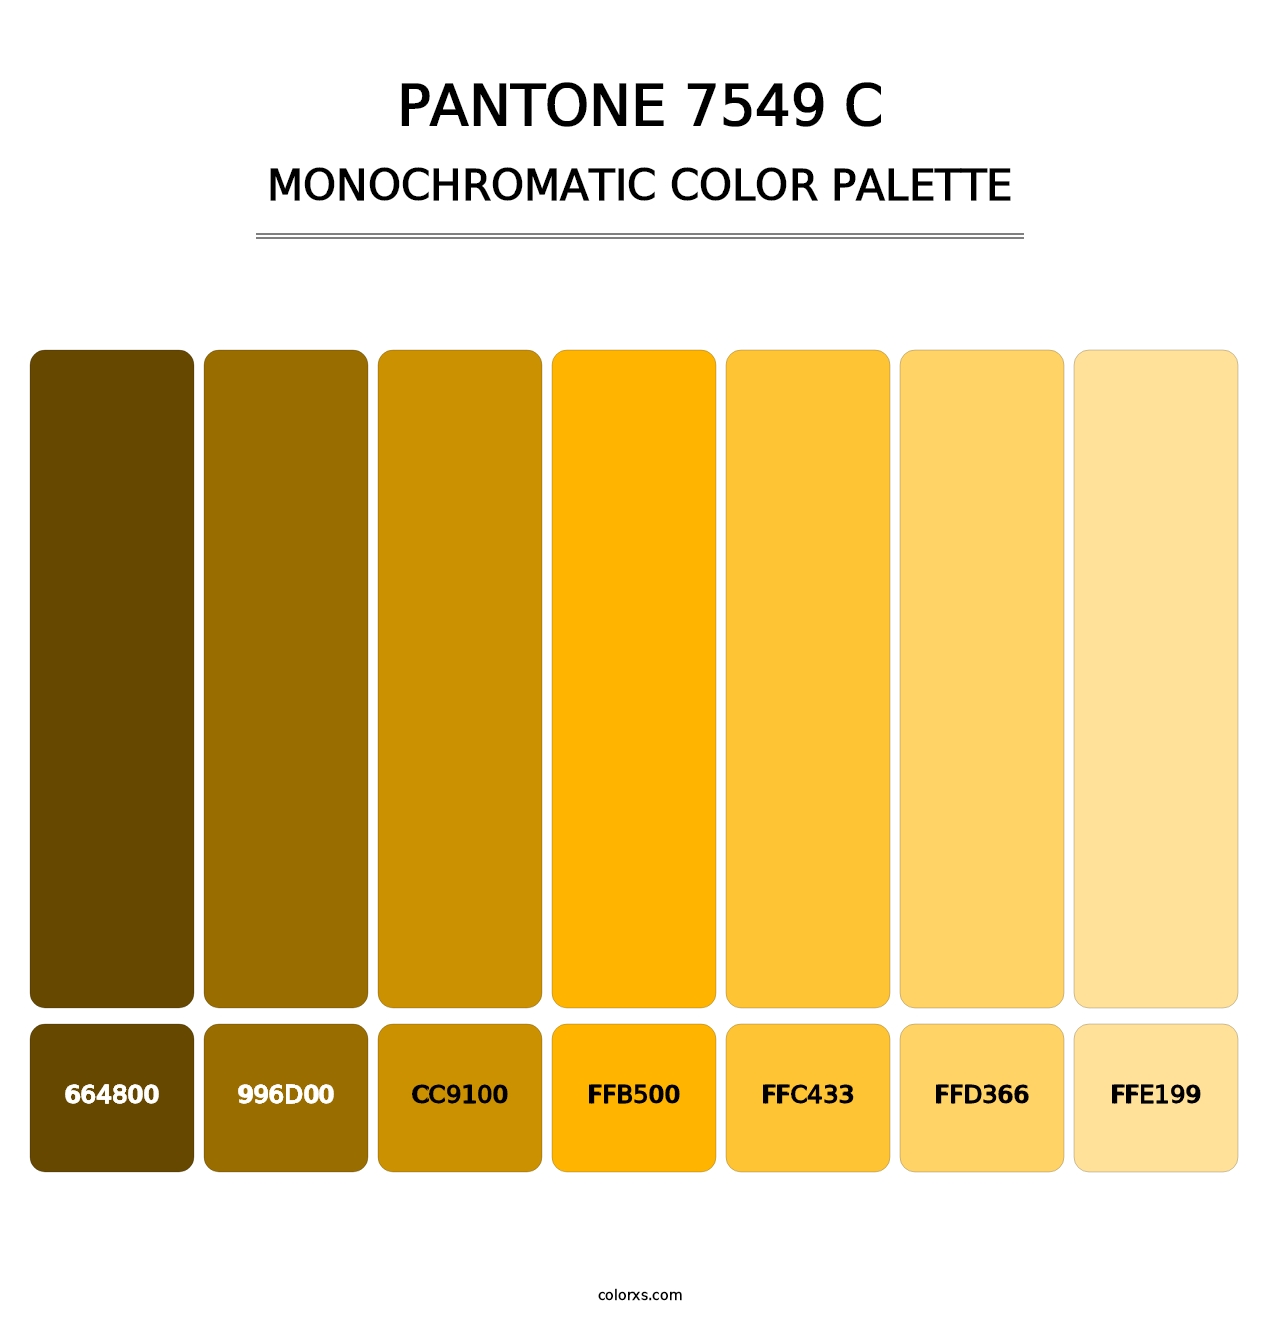 PANTONE 7549 C - Monochromatic Color Palette